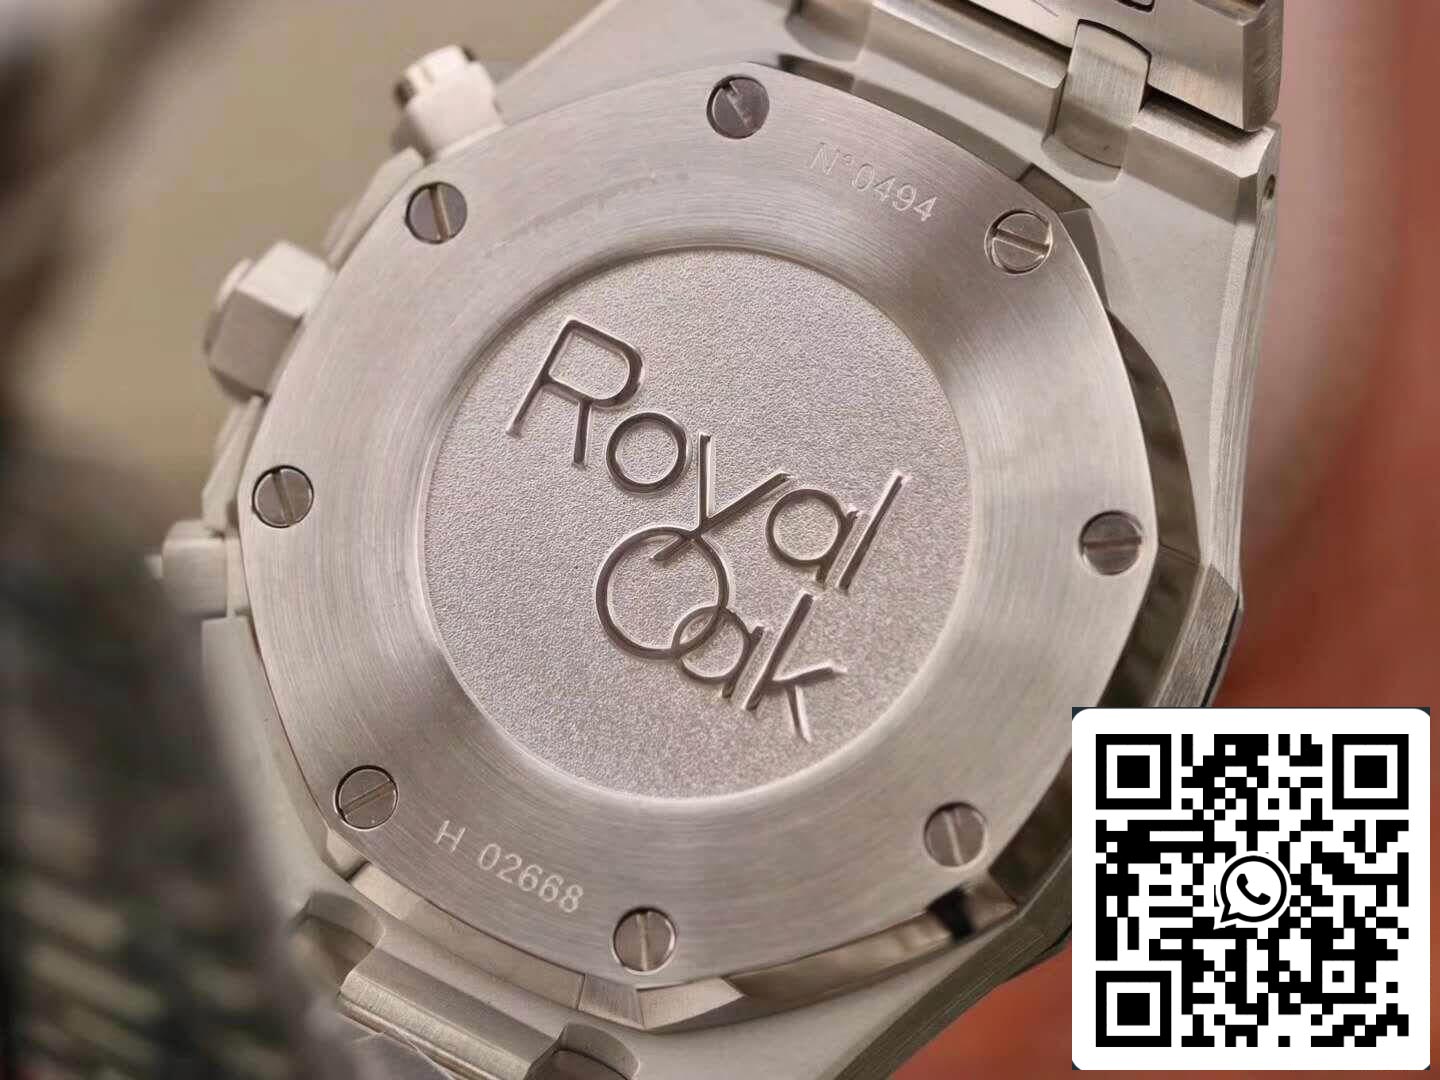 Audemars Piguet Royal Oak Chronograph 26331ST.OO.1220ST OM Factory 1:1 Best Edition Swiss ETA7750 White Dial EU Watch Store